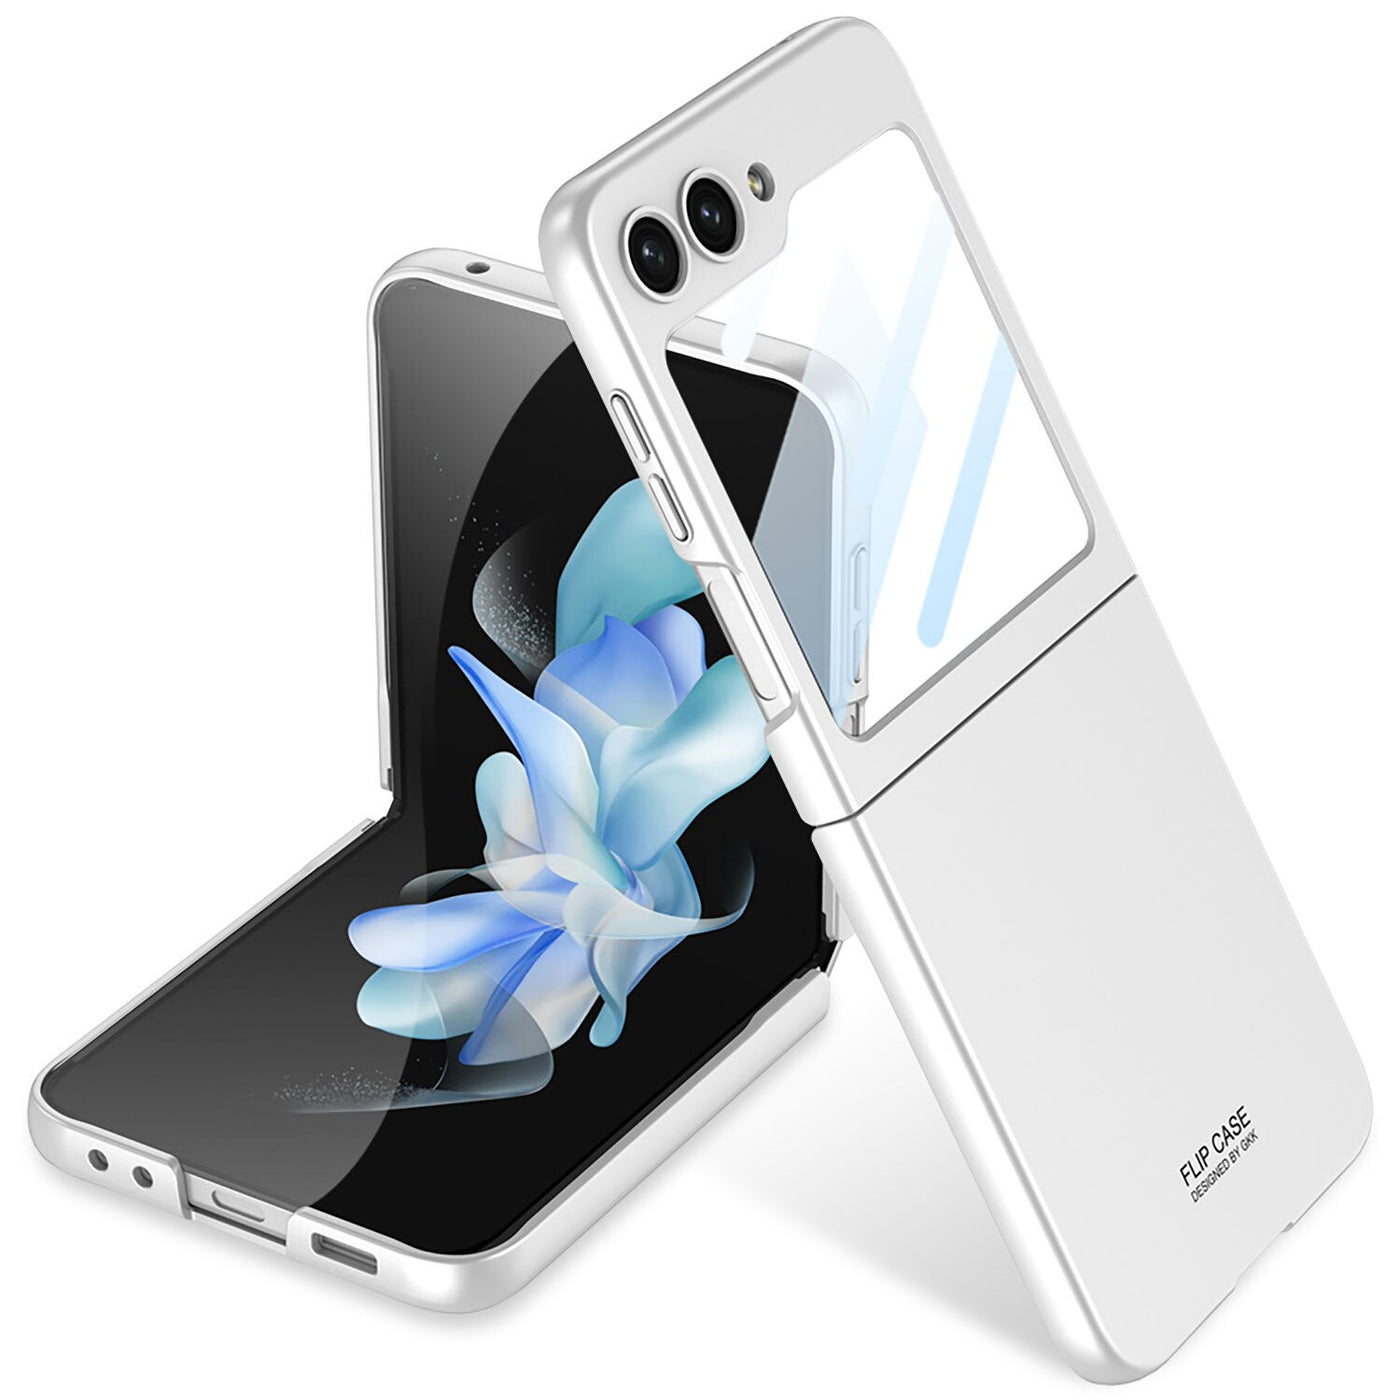 Ultra-thin Folded Case for Samsung Galaxy Z Flip 5